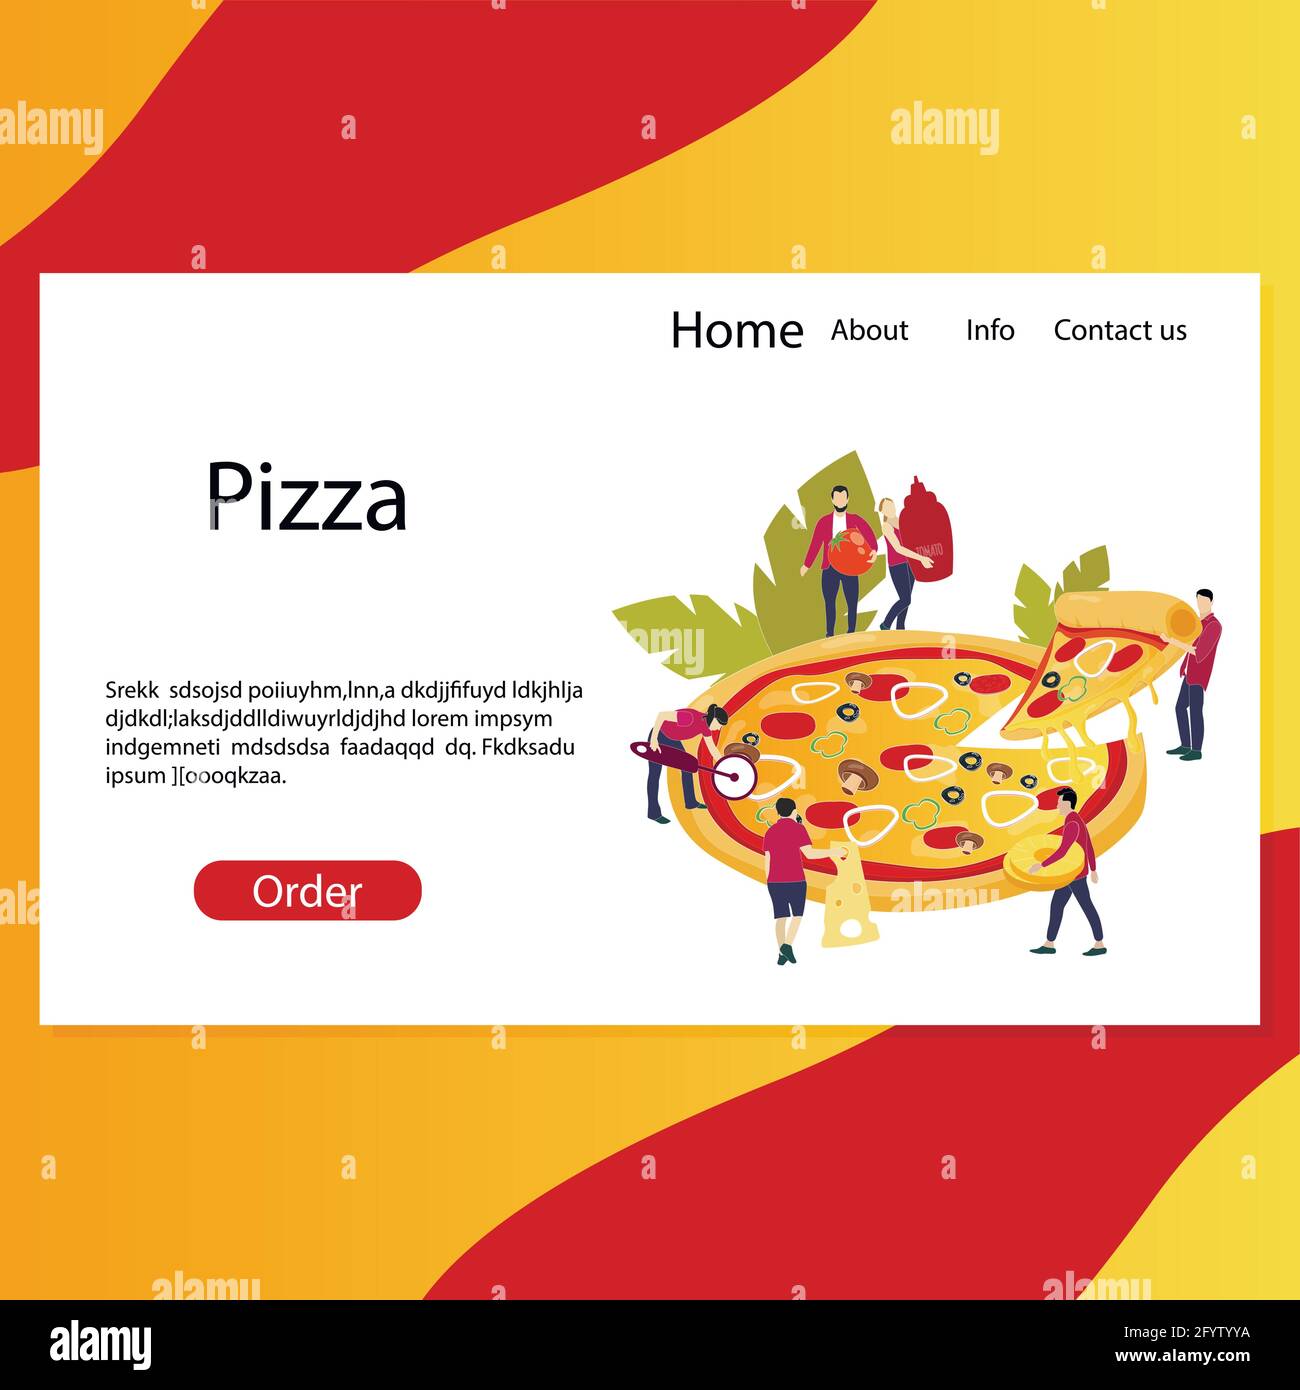 Pizzeria web Landing page, site Web pour faire la commande, commande rapide de pizza délicieuse pour les amis. Modèle de page pour la restauration rapide italienne, prendre une tranche et savoureux Illustration de Vecteur